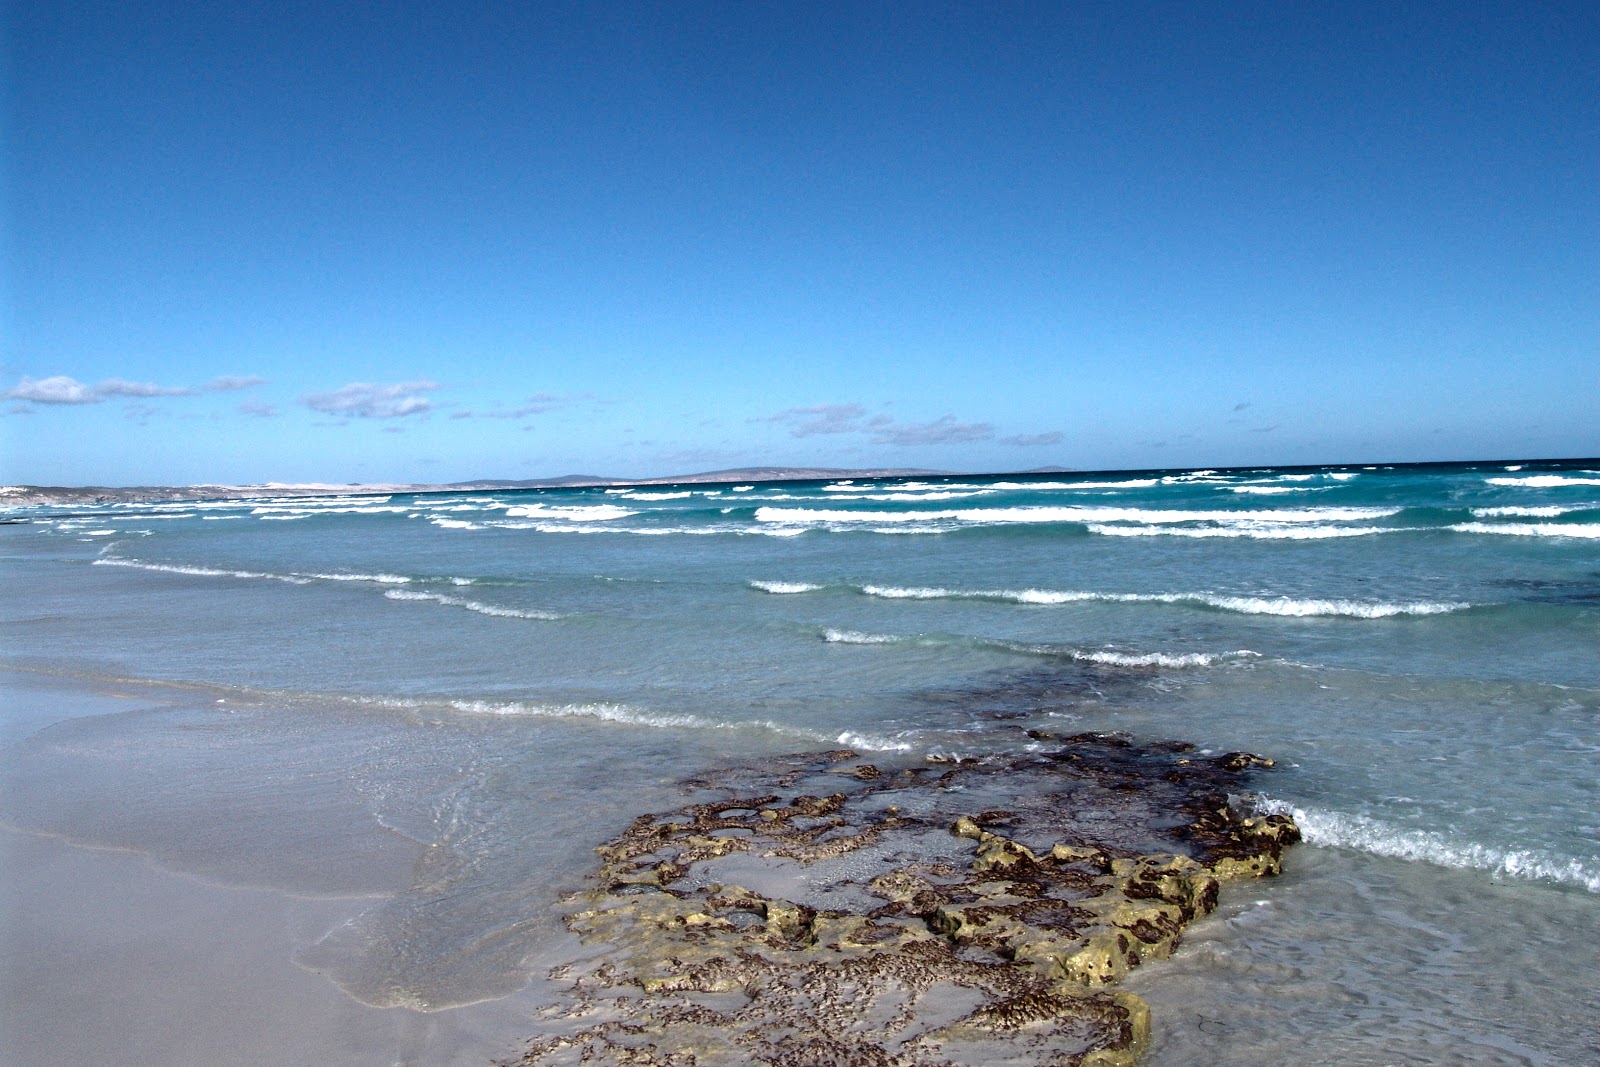 Foto de Mary Ellis Wreck Beach com água cristalina superfície